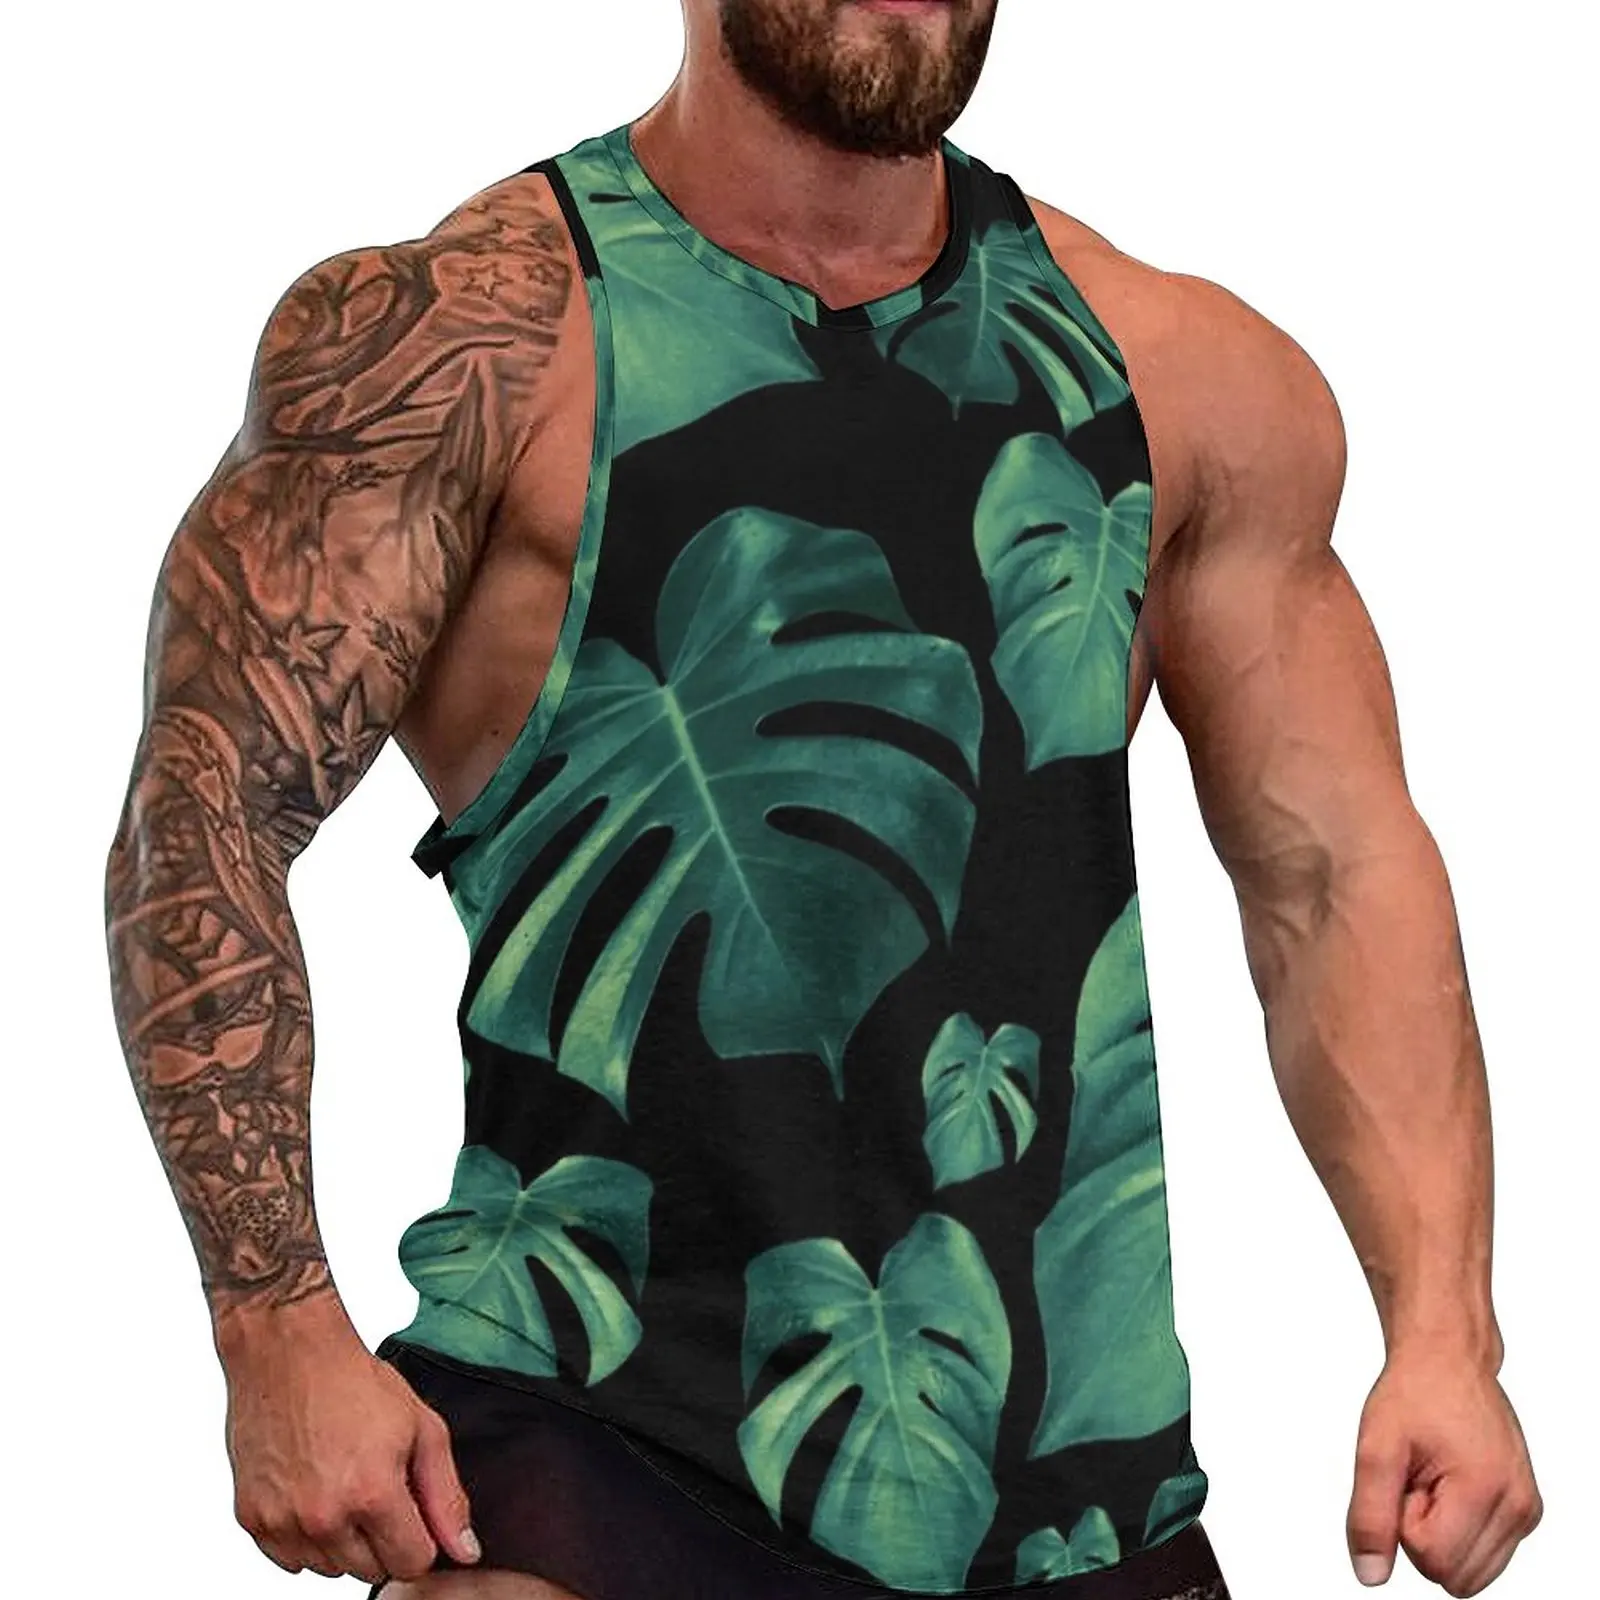 

Майка Monstera мужская с принтом зеленых листьев, топ с тропическим принтом, спортивная одежда для тренировок, рубашка оверсайз без рукавов, лето